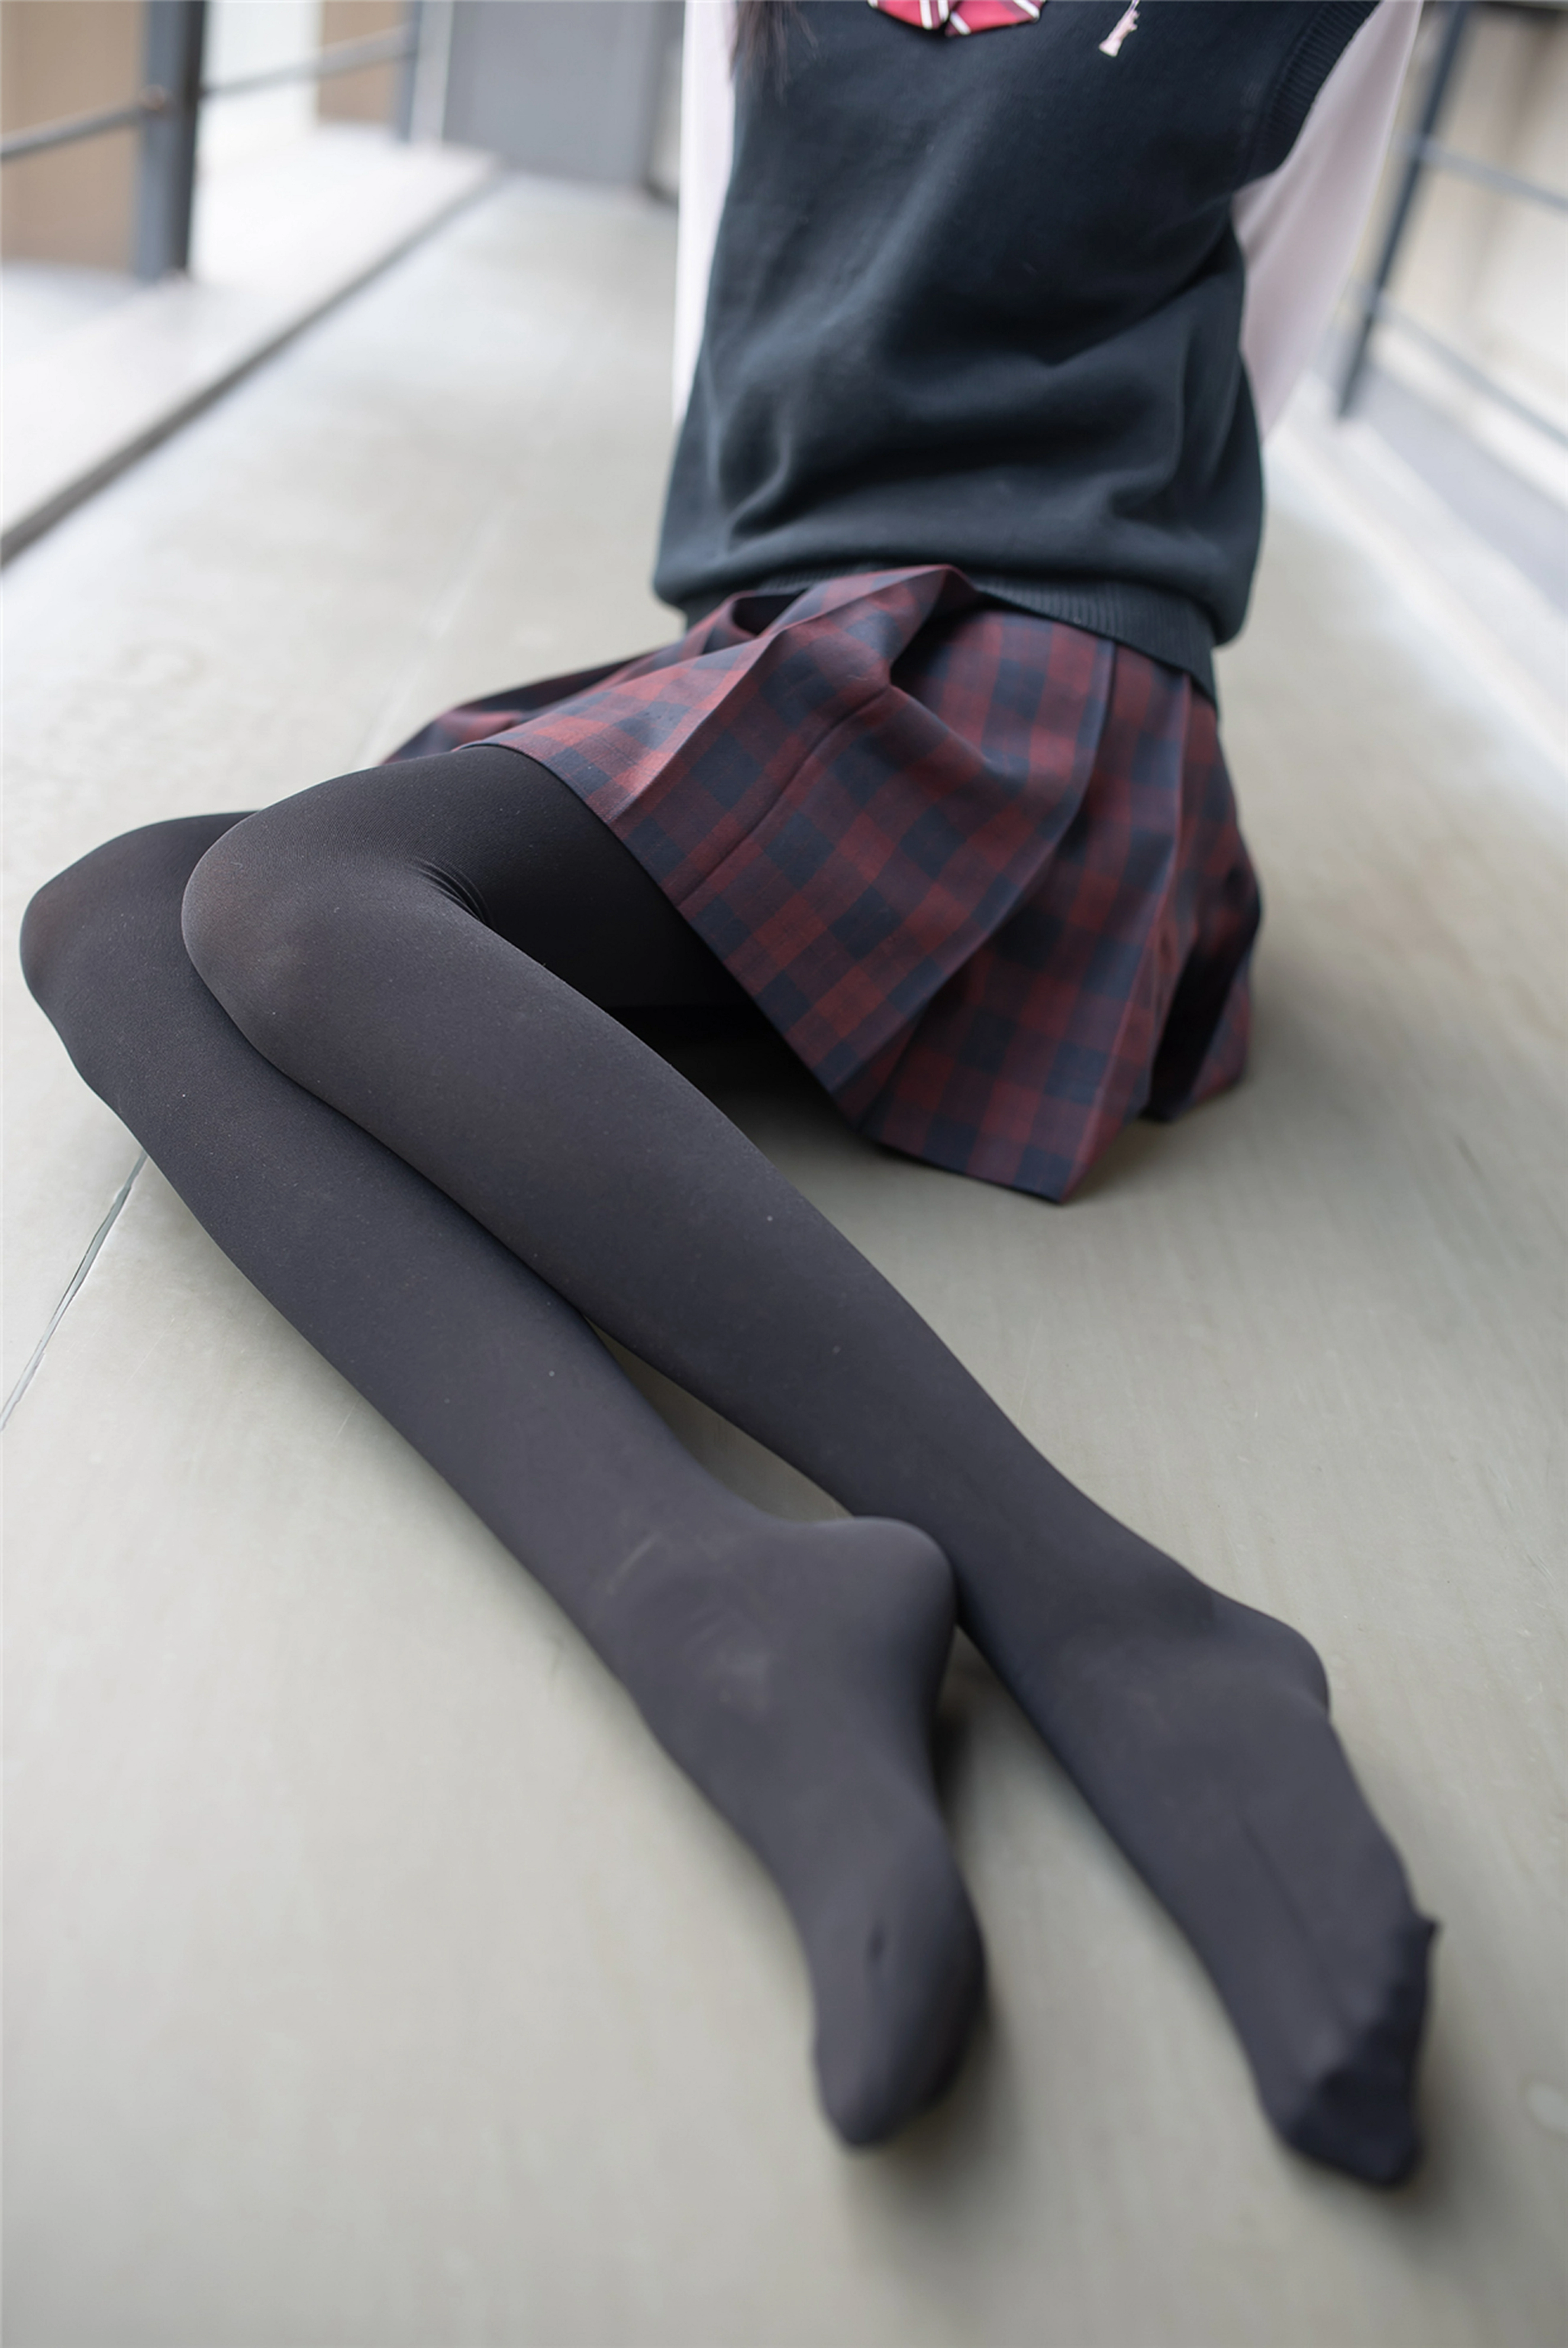 [风之领域]NO.192 学校走廊上的性感学妹格子短裙加黑丝美腿私房写真集,